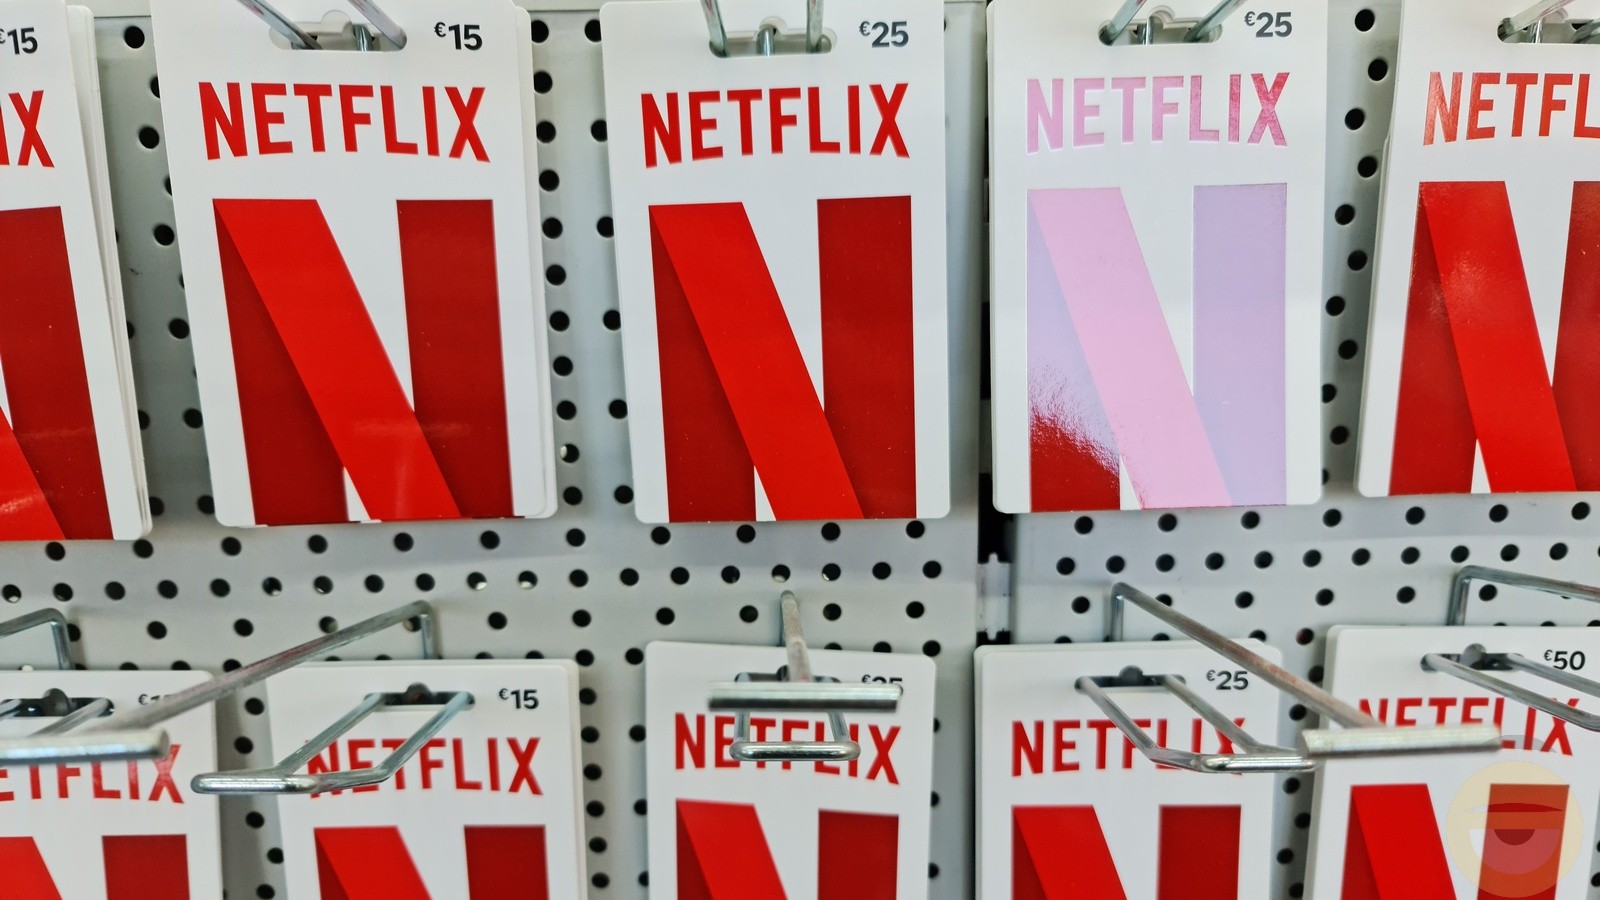 203 εκατομμύρια ενεργούς συνδρομητές ανακοίνωσε το Netflix